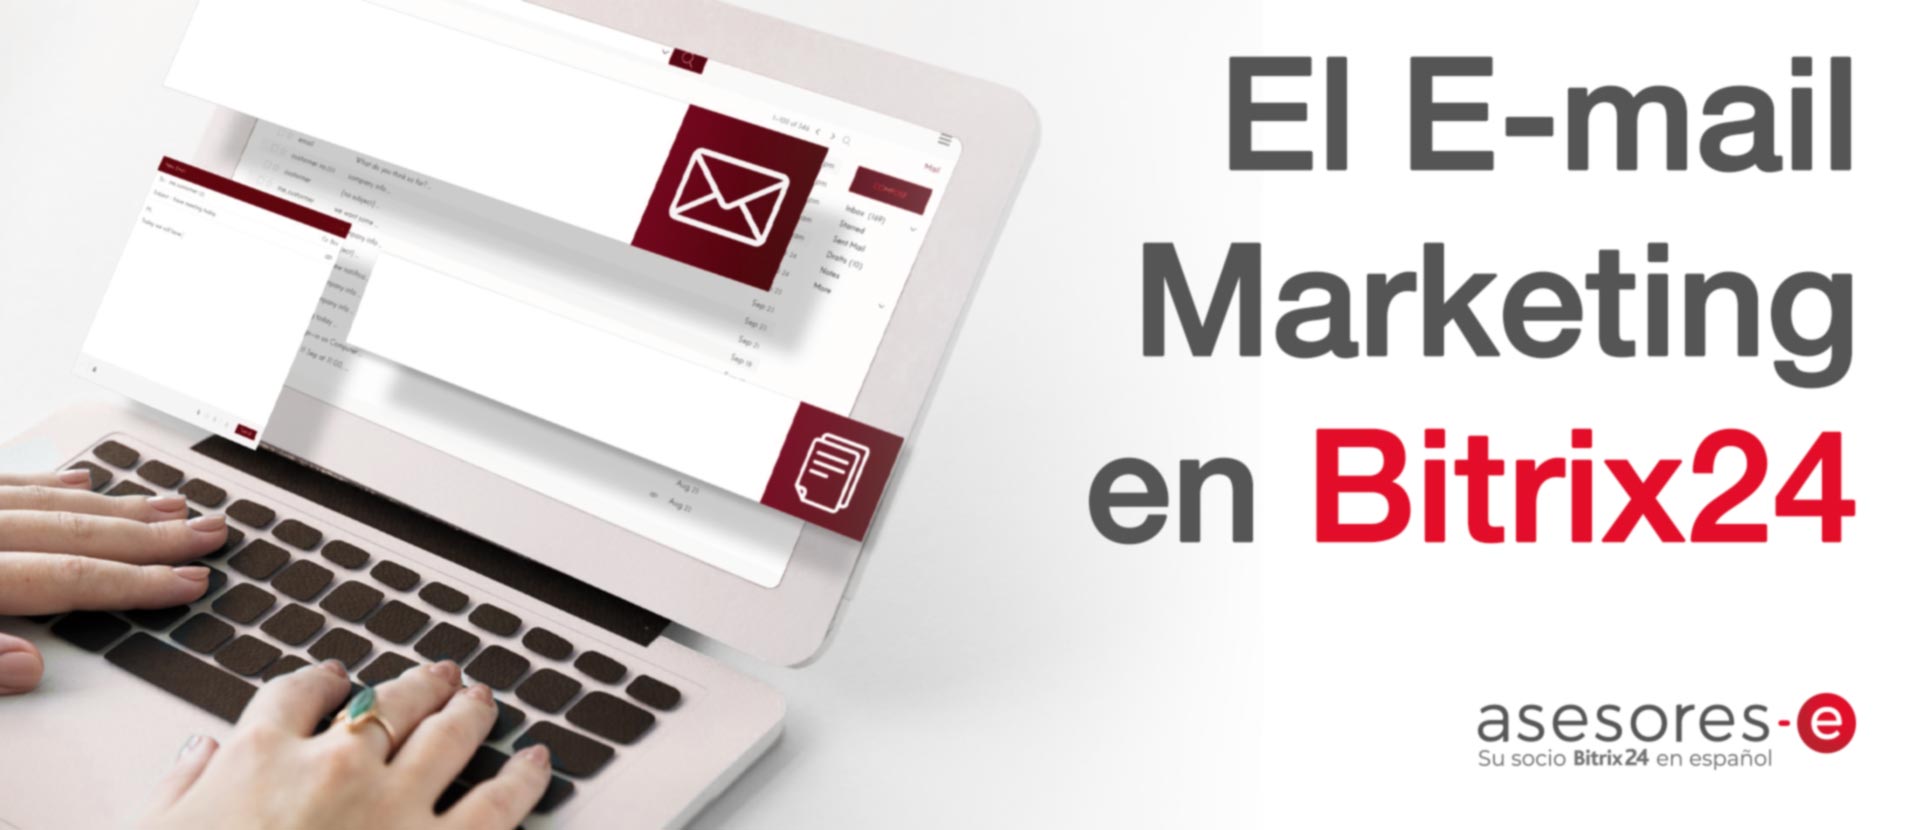 El E-mail marketing en Bitrix24